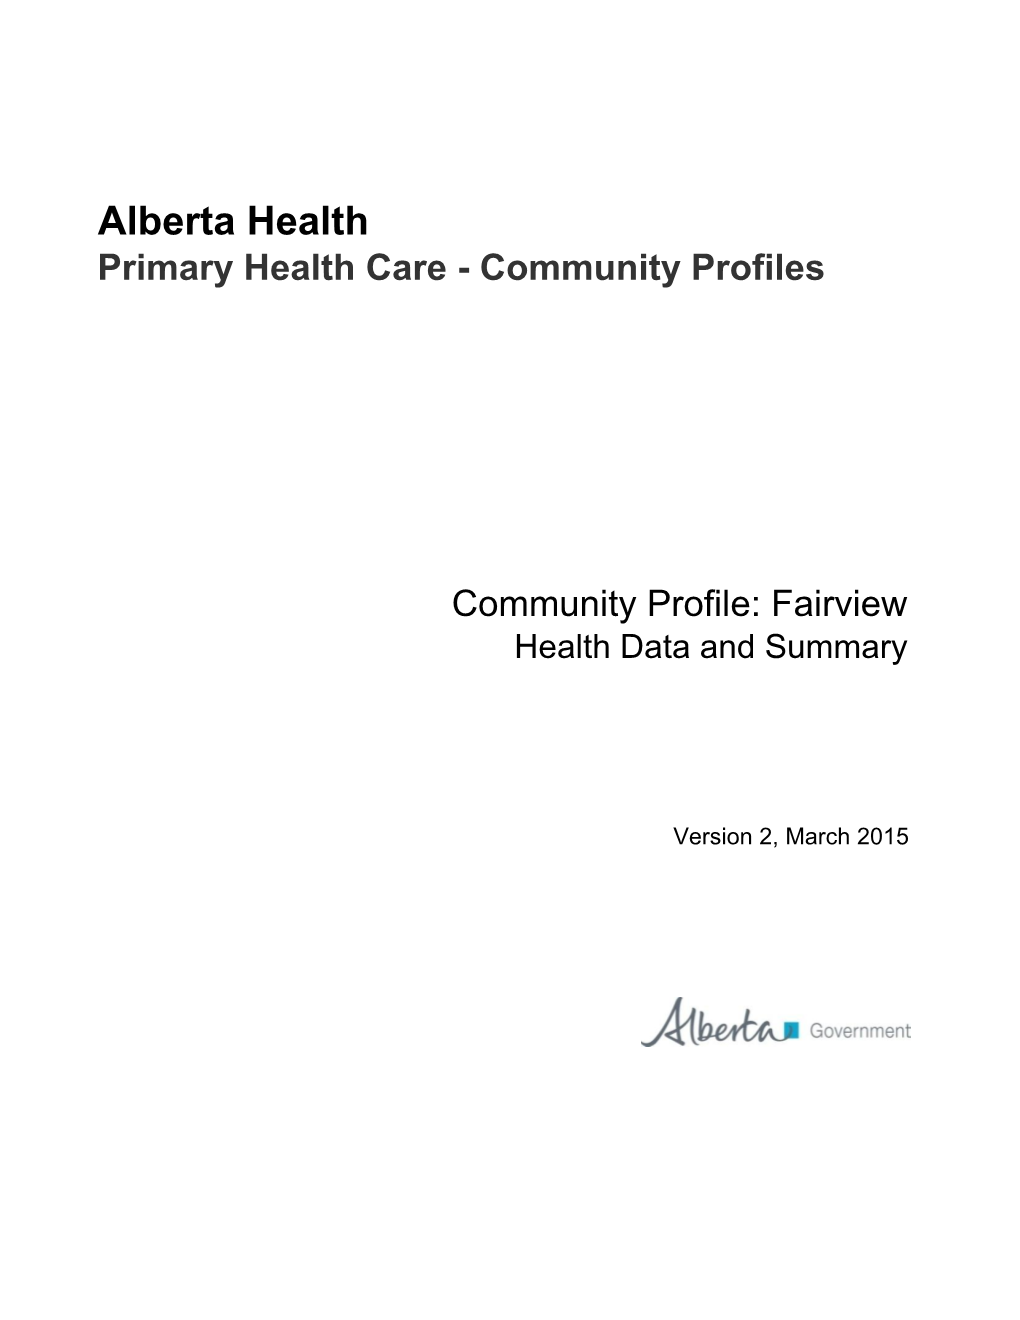 Fairview Health Data and Summary